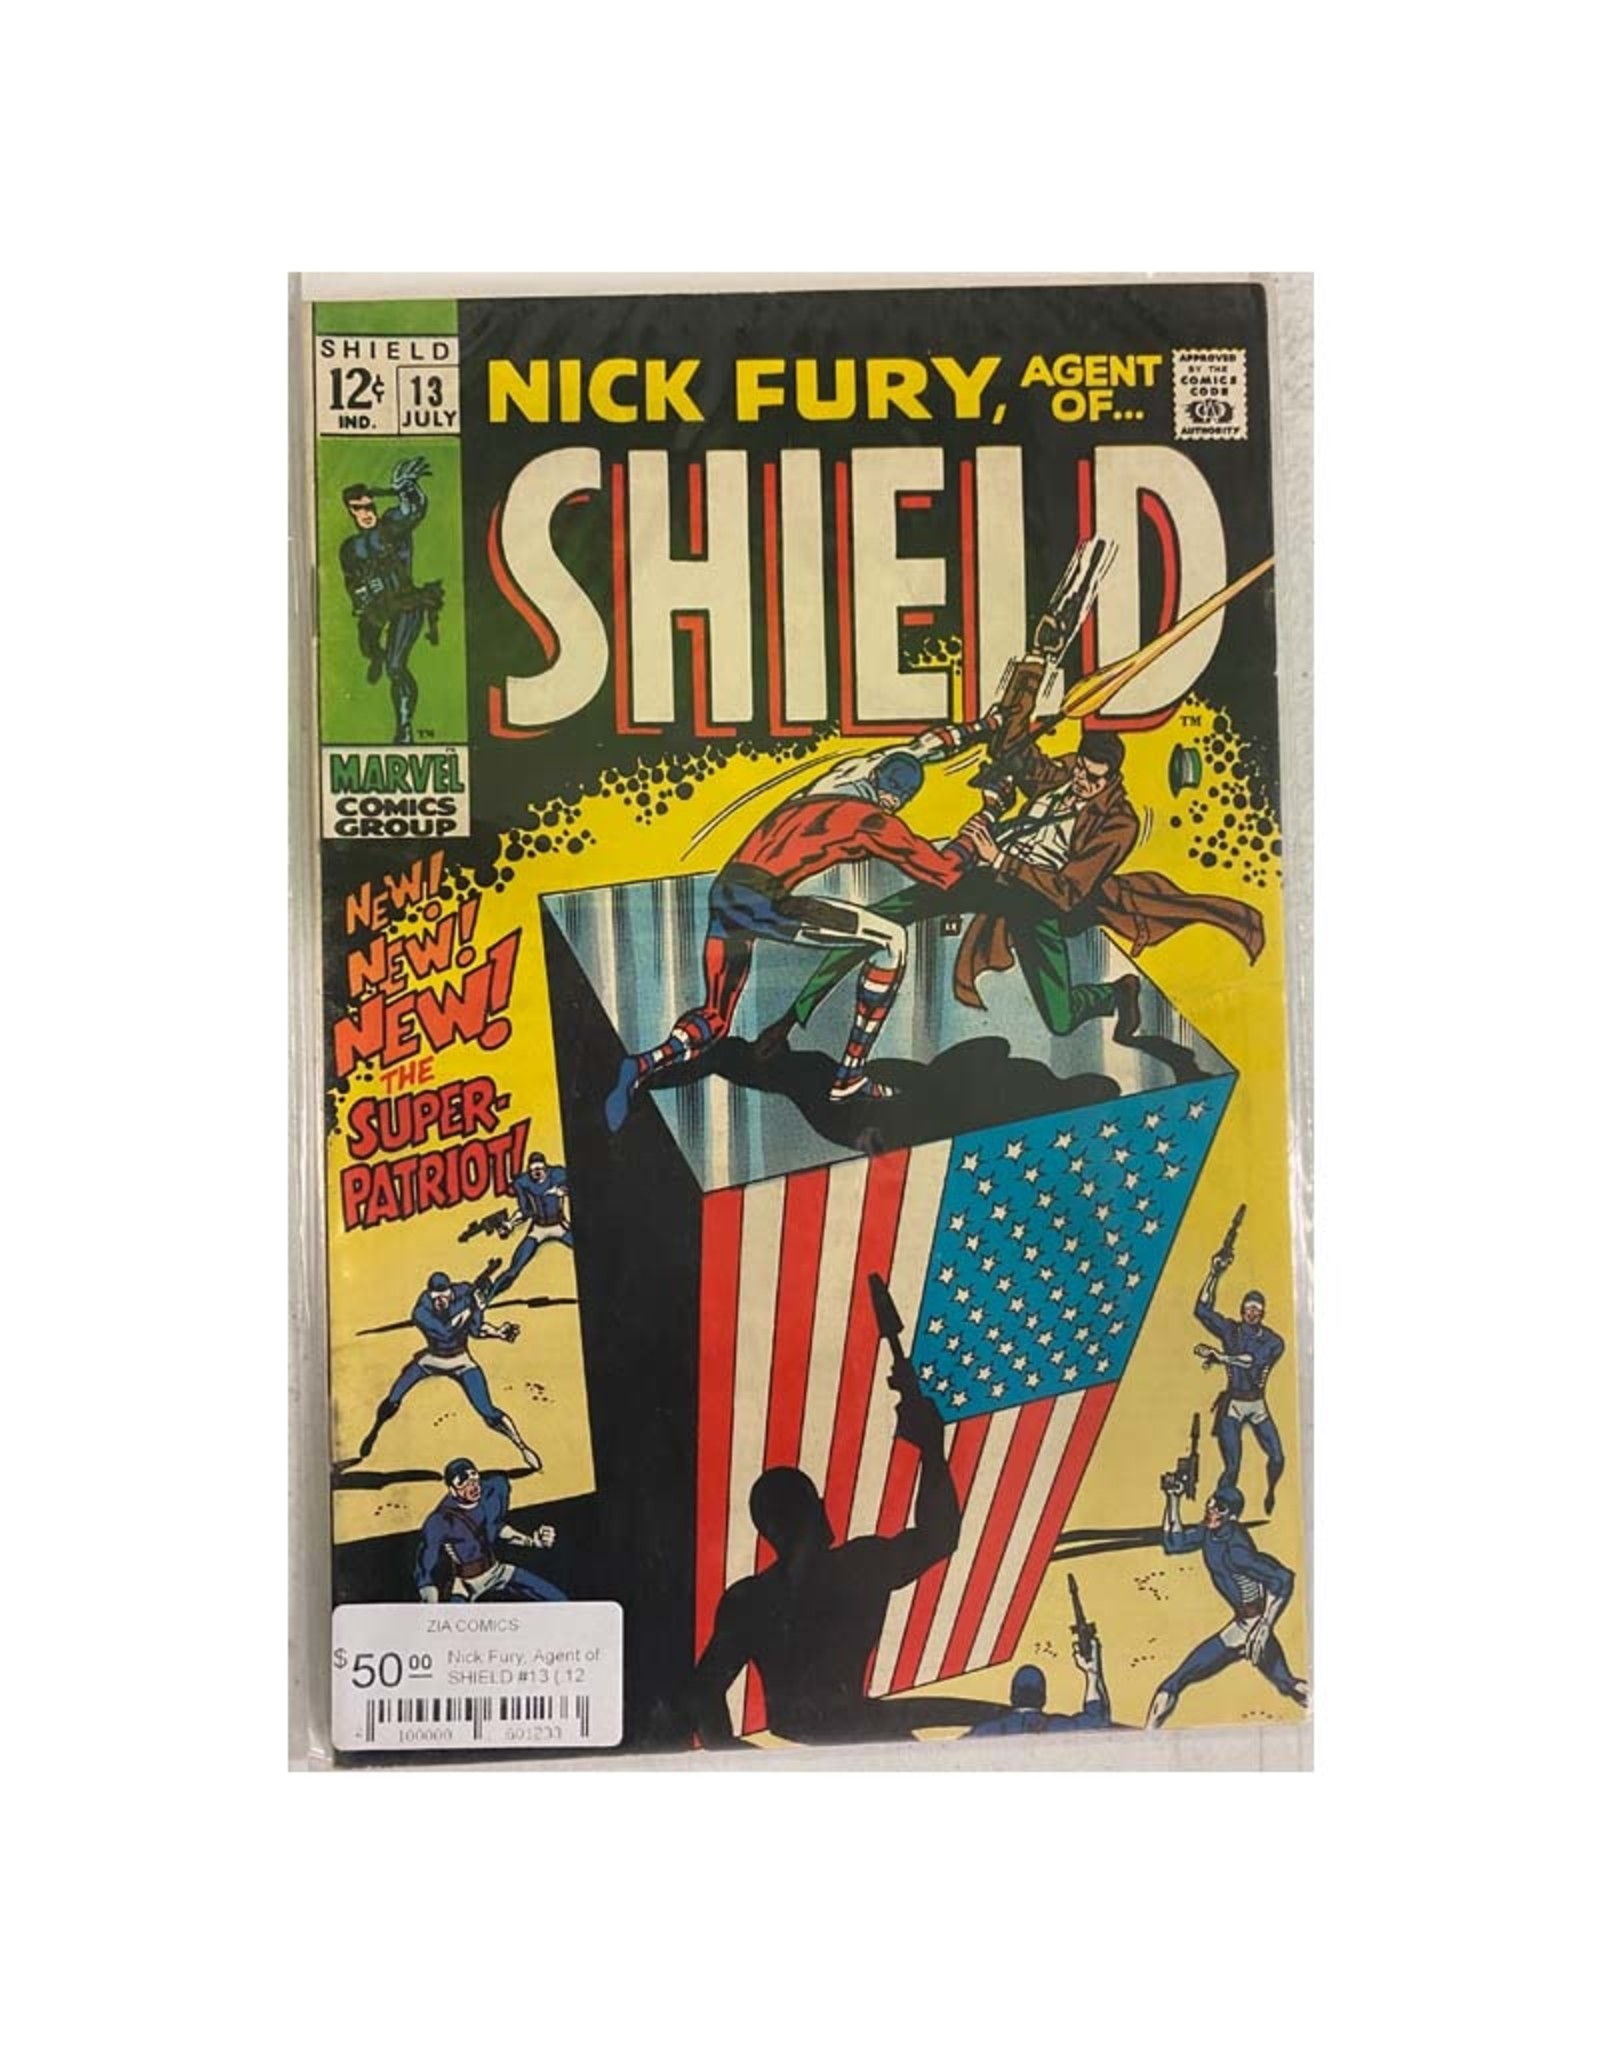 Marvel Comics Nick Fury, Agent of S.H.I.E.L.D. #13